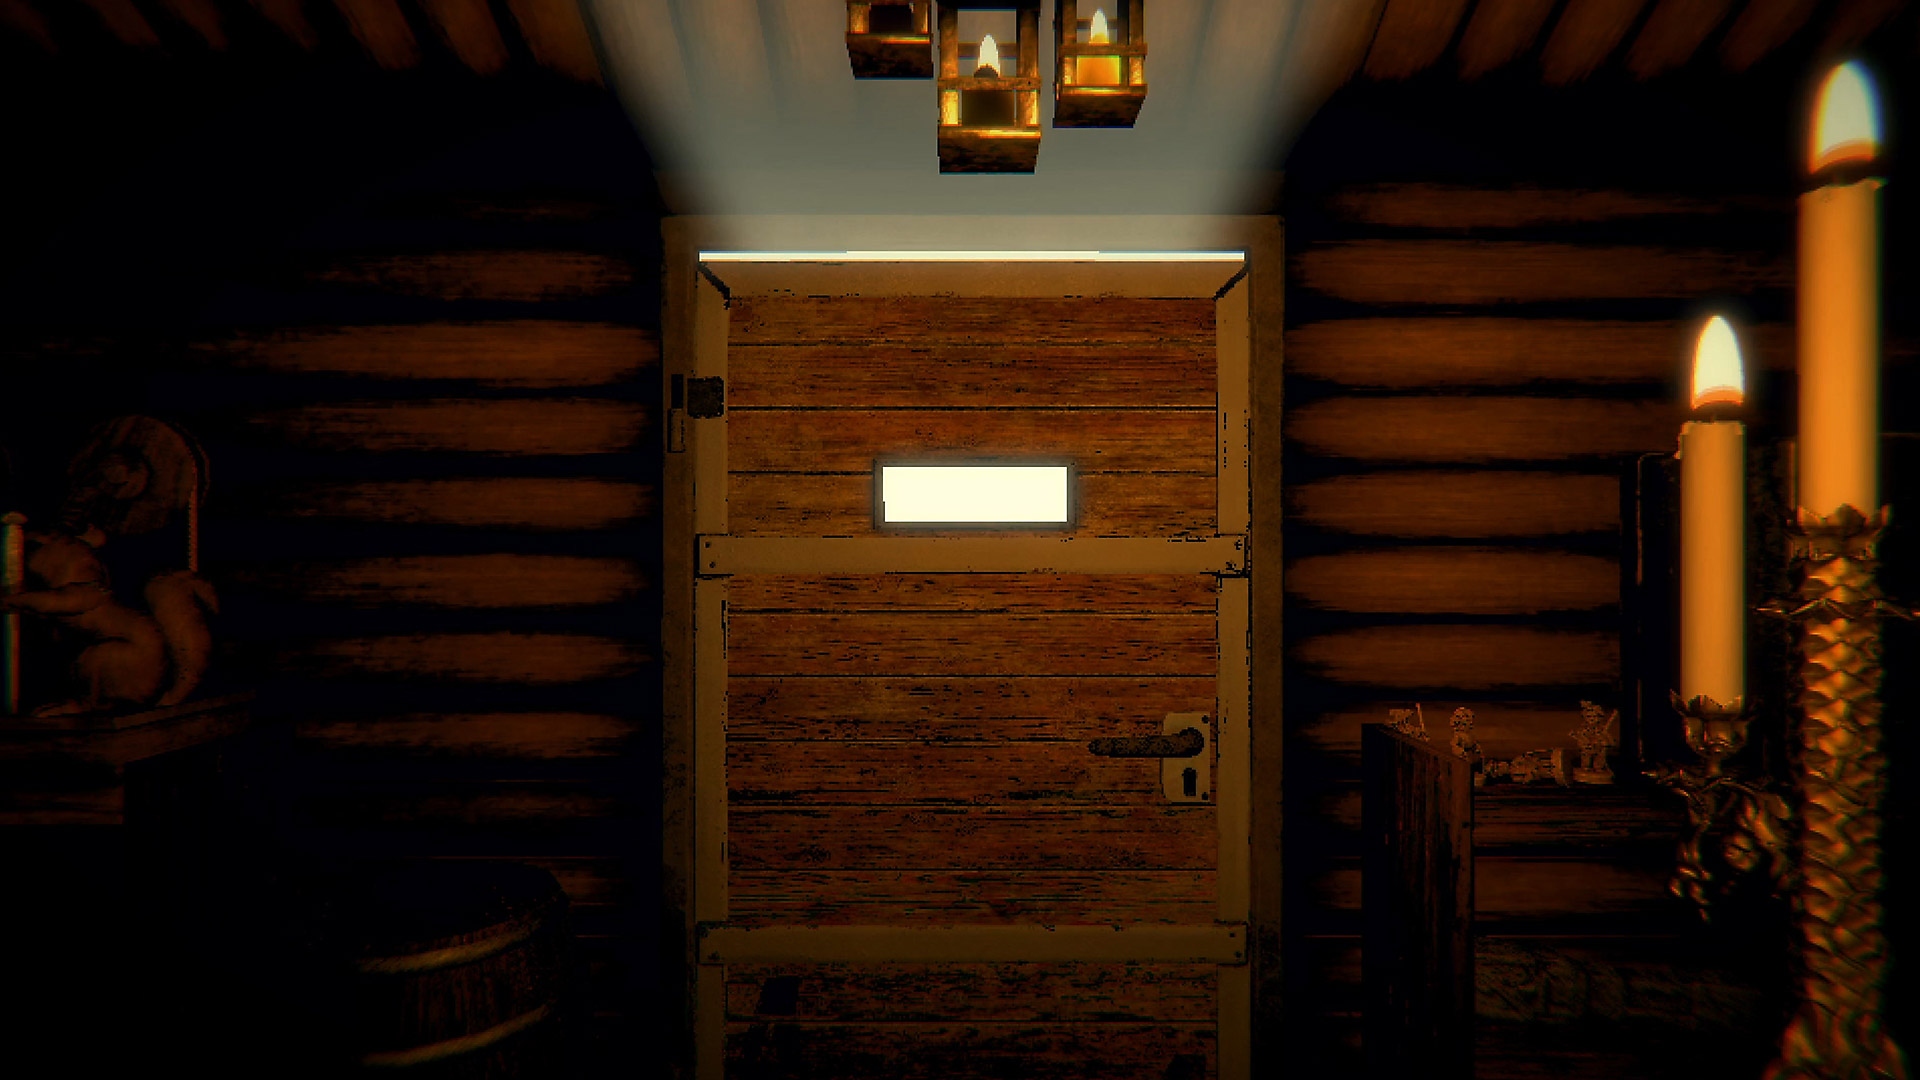 لقطة شاشة لأسلوب لعب Inscryption تعرض بابًا خشبيًا مغلقًا في ممر مضاء بالشموع.